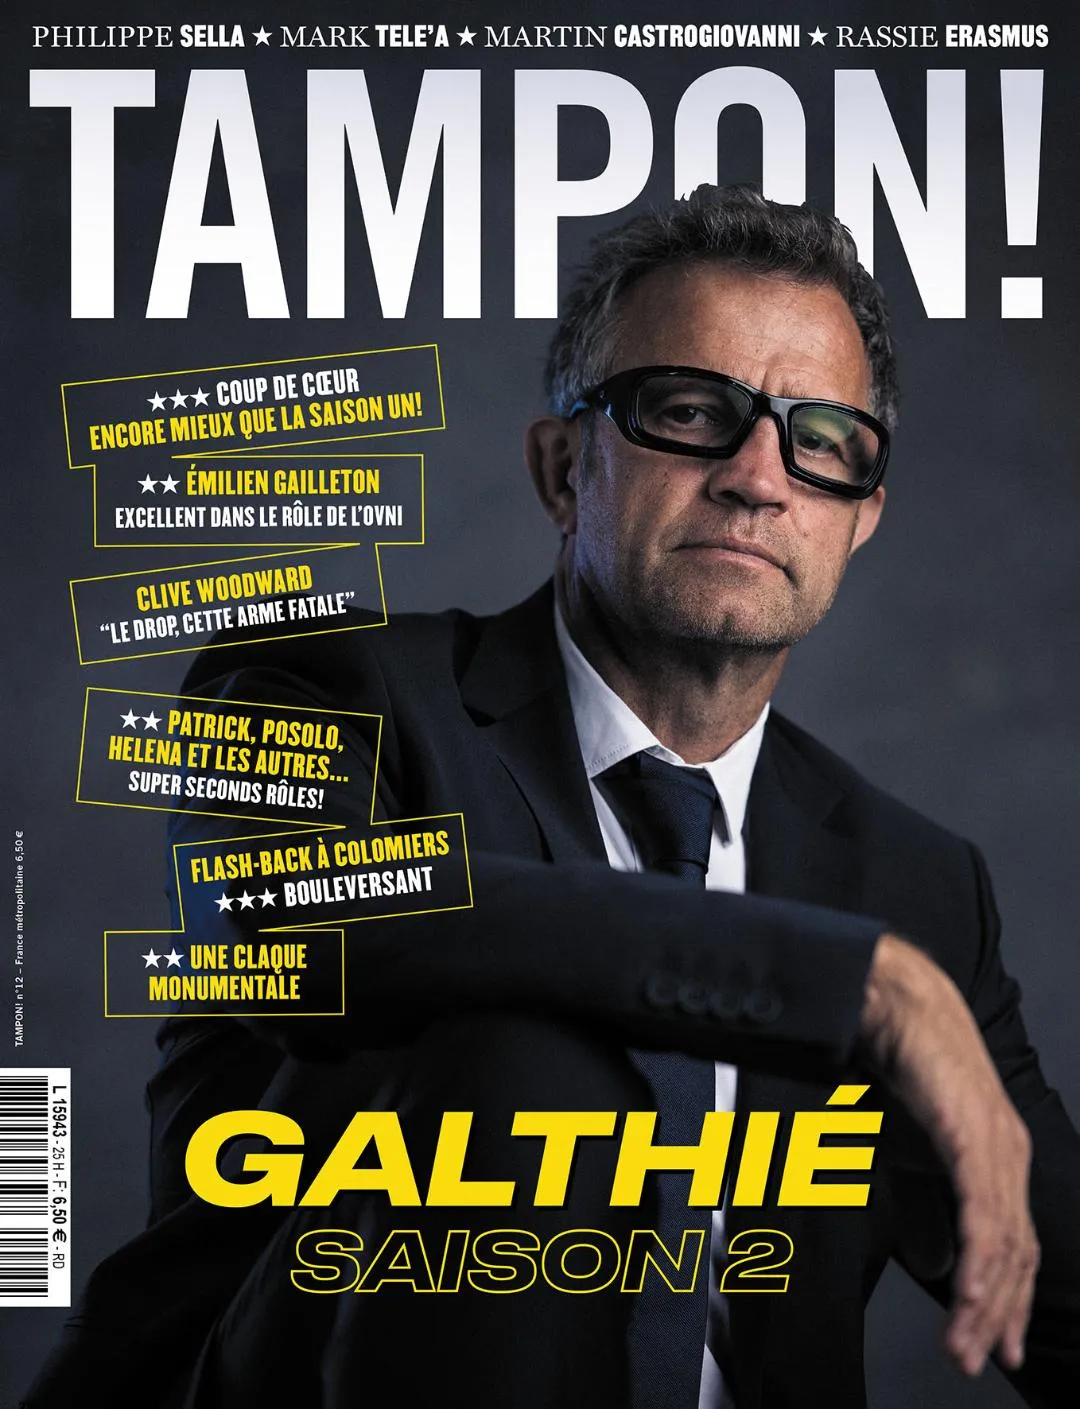 Galthié, Woodward, Gailleton : le sommaire du nouveau numéro de « Tampon! »